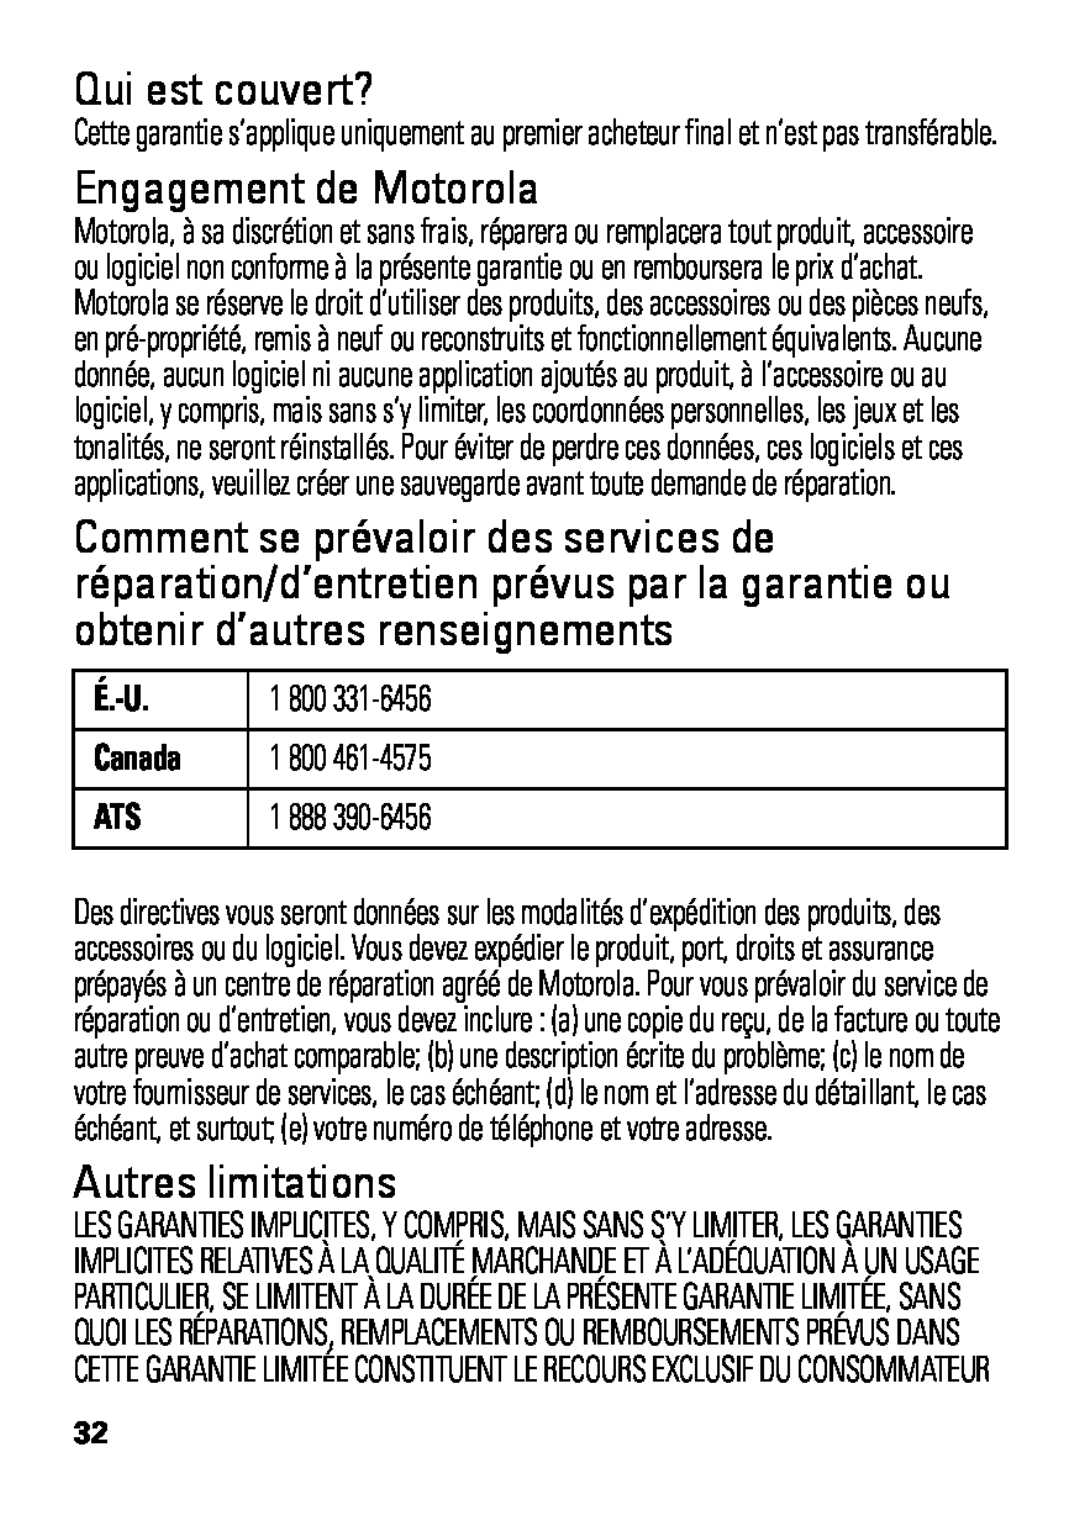 Motorola HX550 manual Qui est couvert?, Engagement de Motorola, Autres limitations, É.-U, Canada 